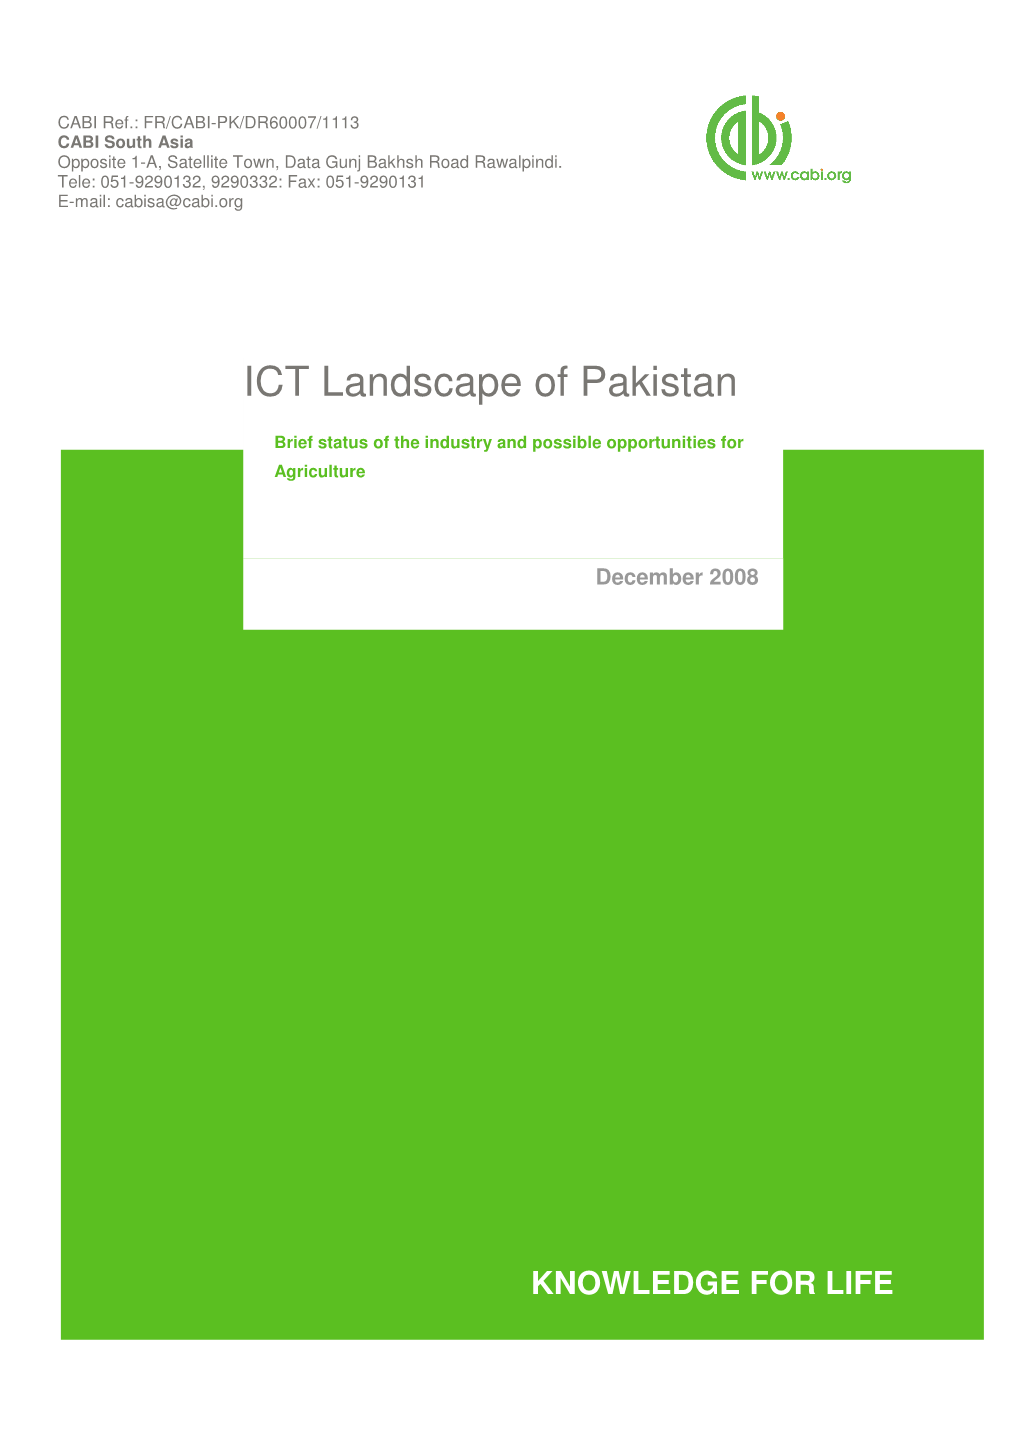 ICT Landscape of Pakistan